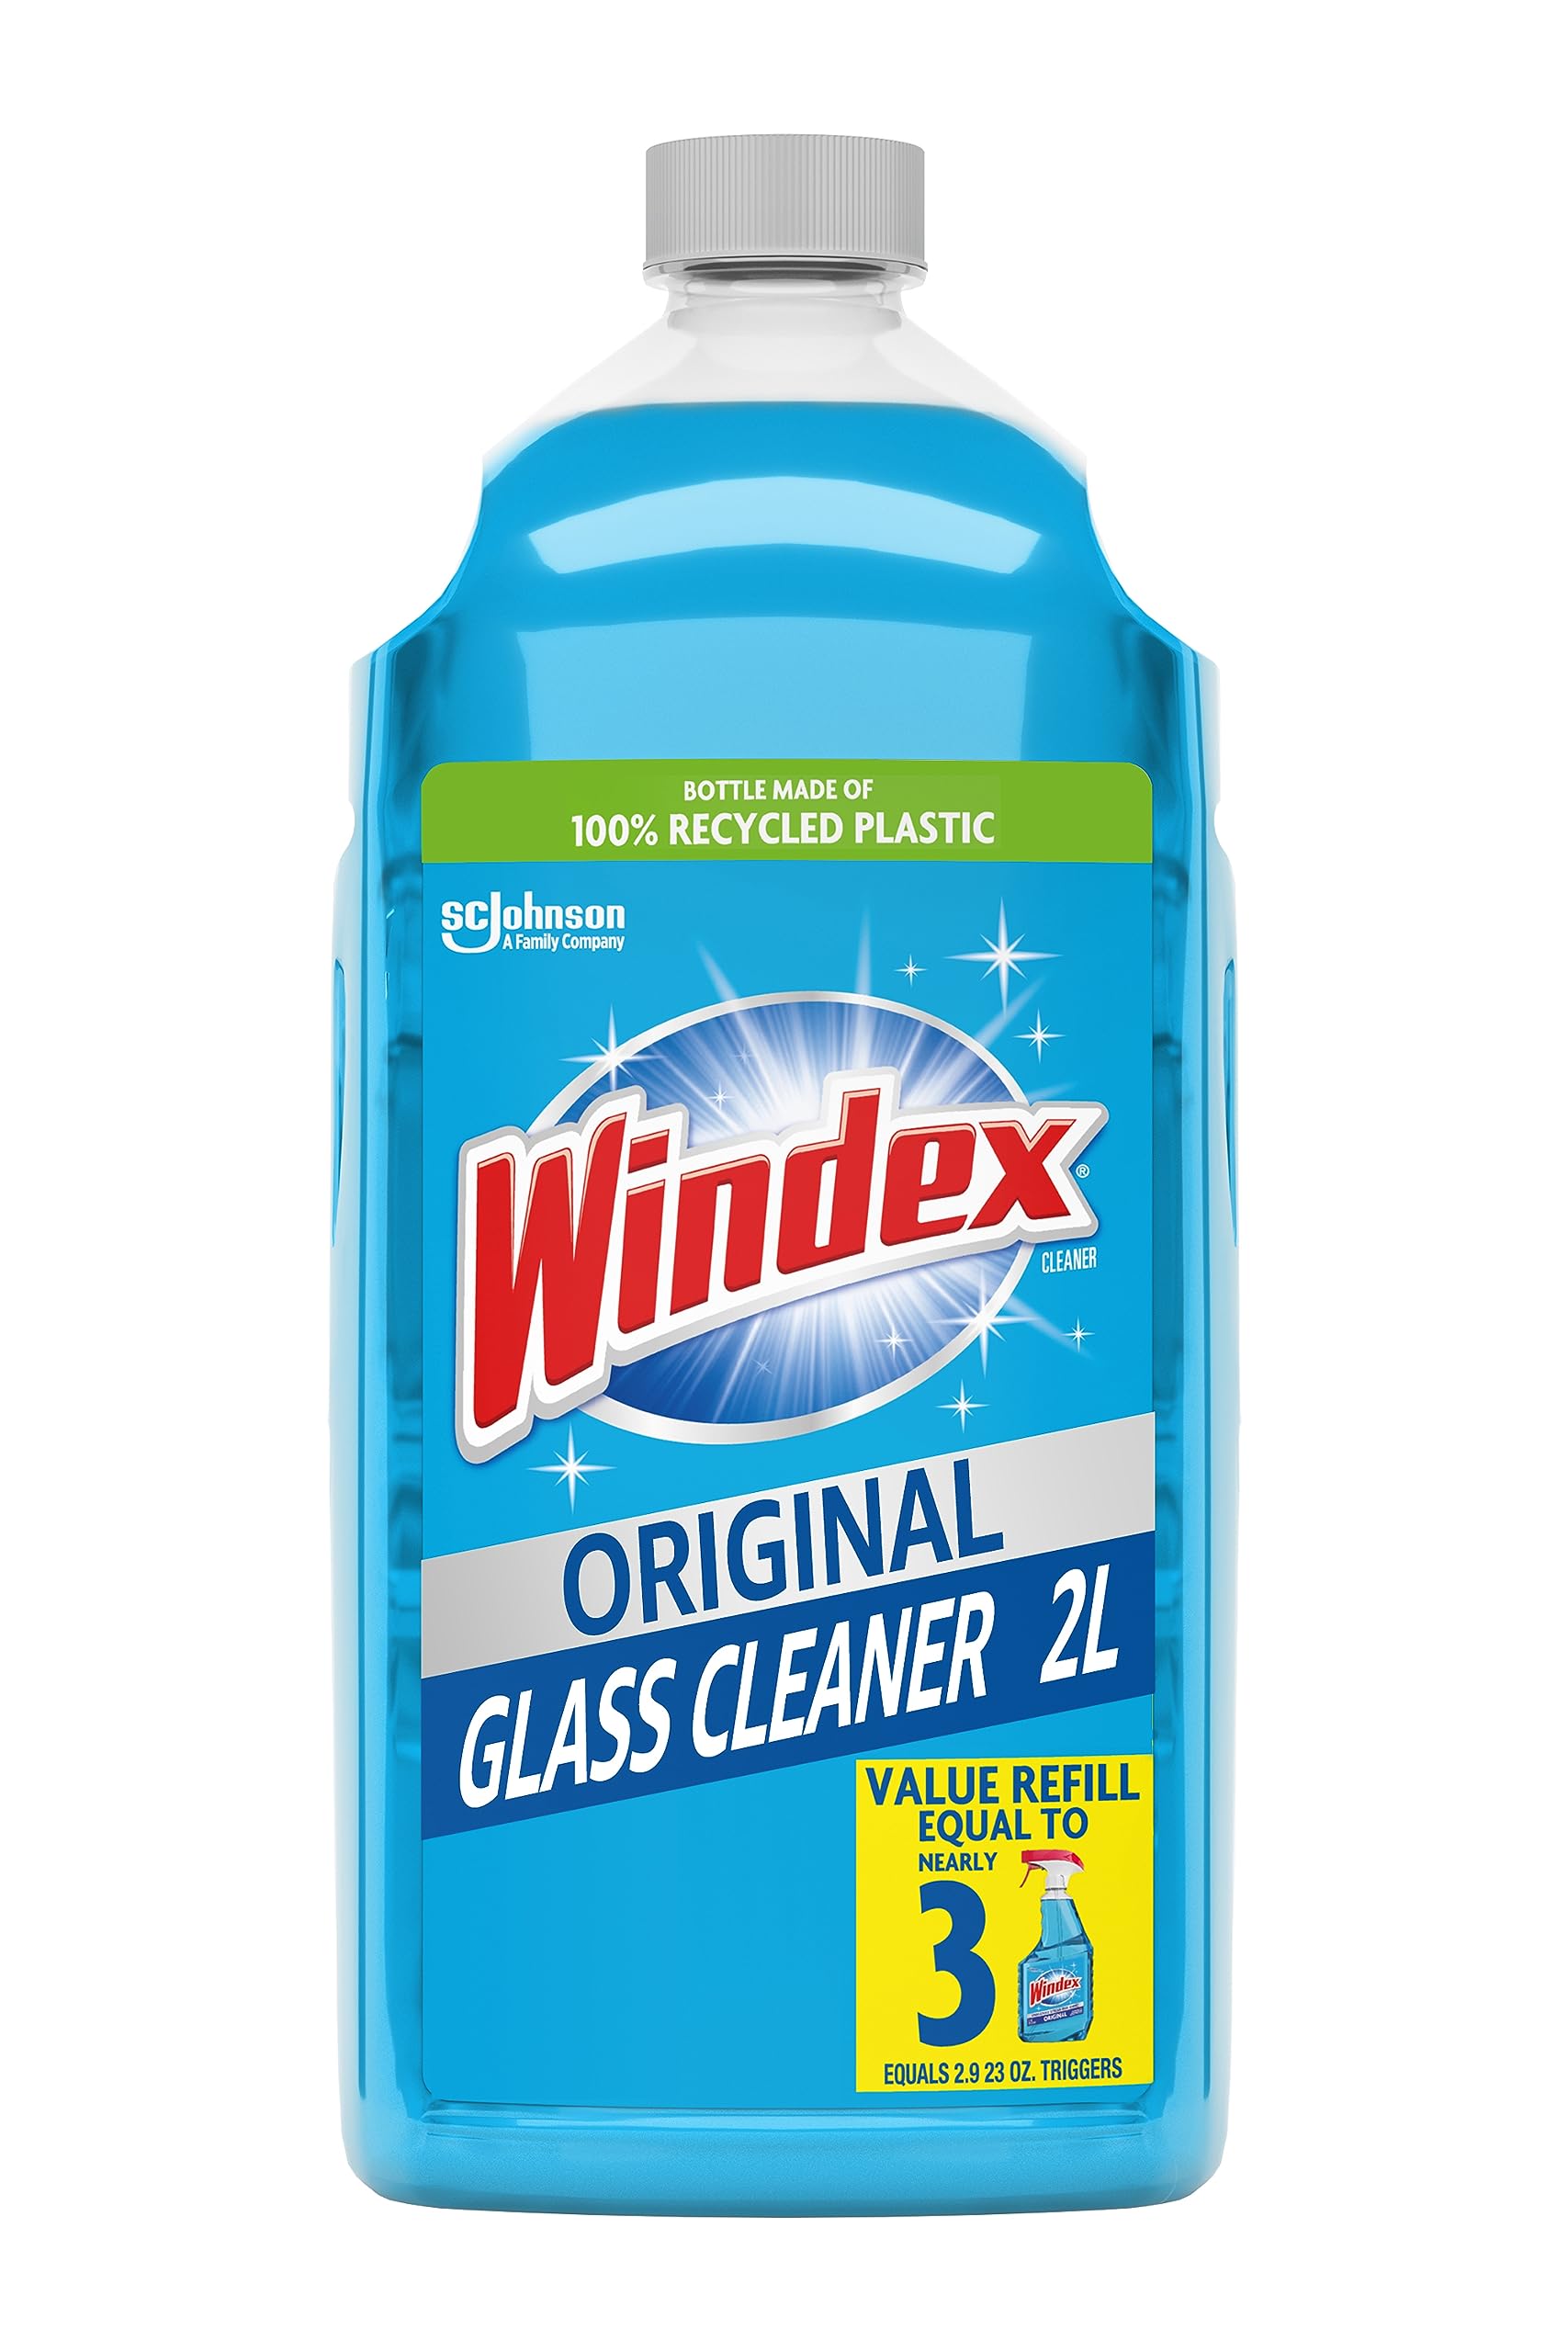 Windex Original Blue Glass Cleaner Refill, 2L, Works on Smudges/Fingerprints, 100% Recovered Coastal Plastic Bottle [Subscribe & Save] $6.63